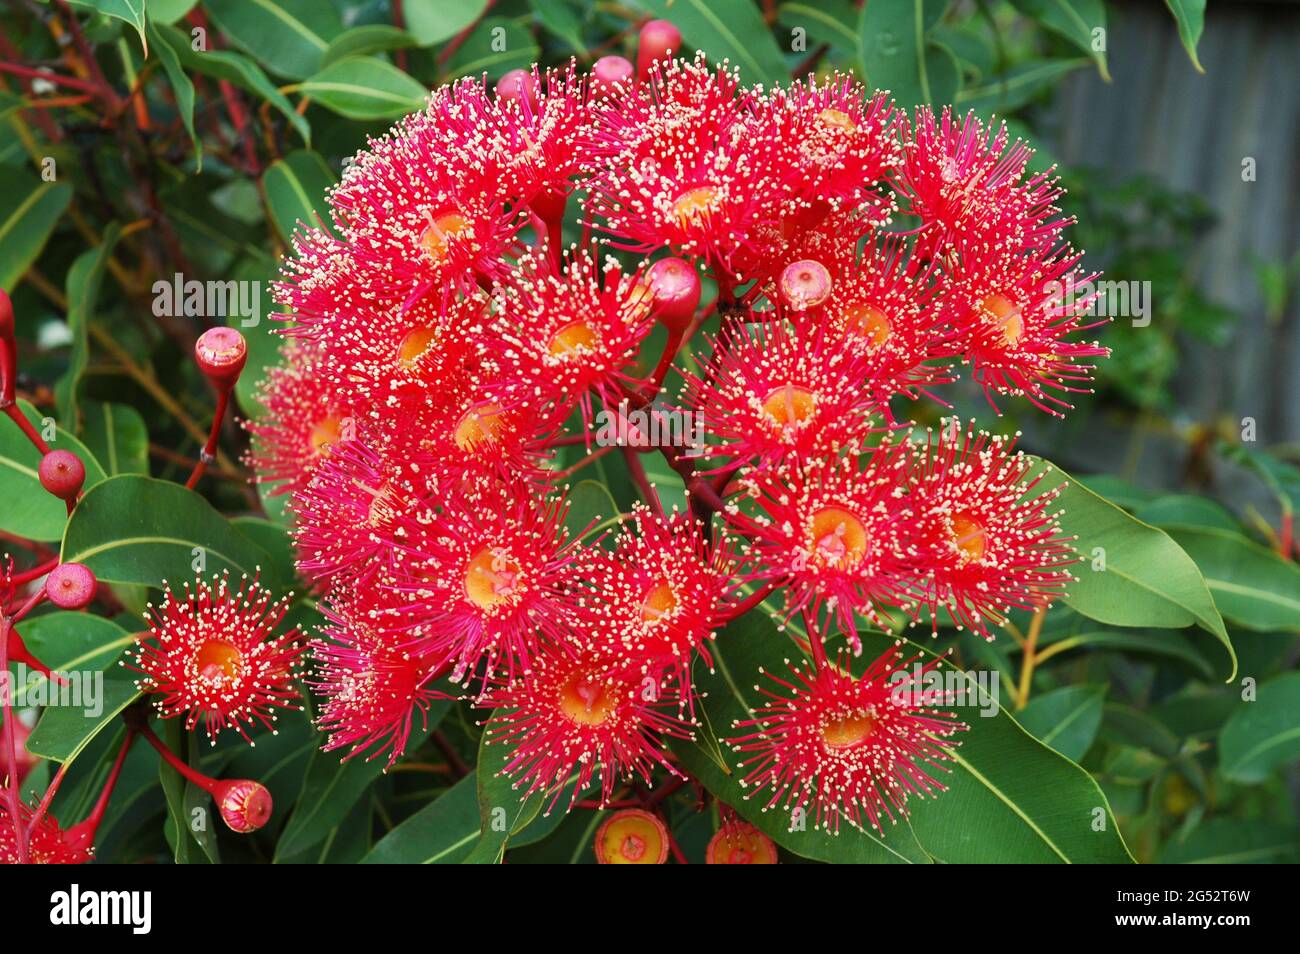 Red flowering Australian shrub. Stock Photo